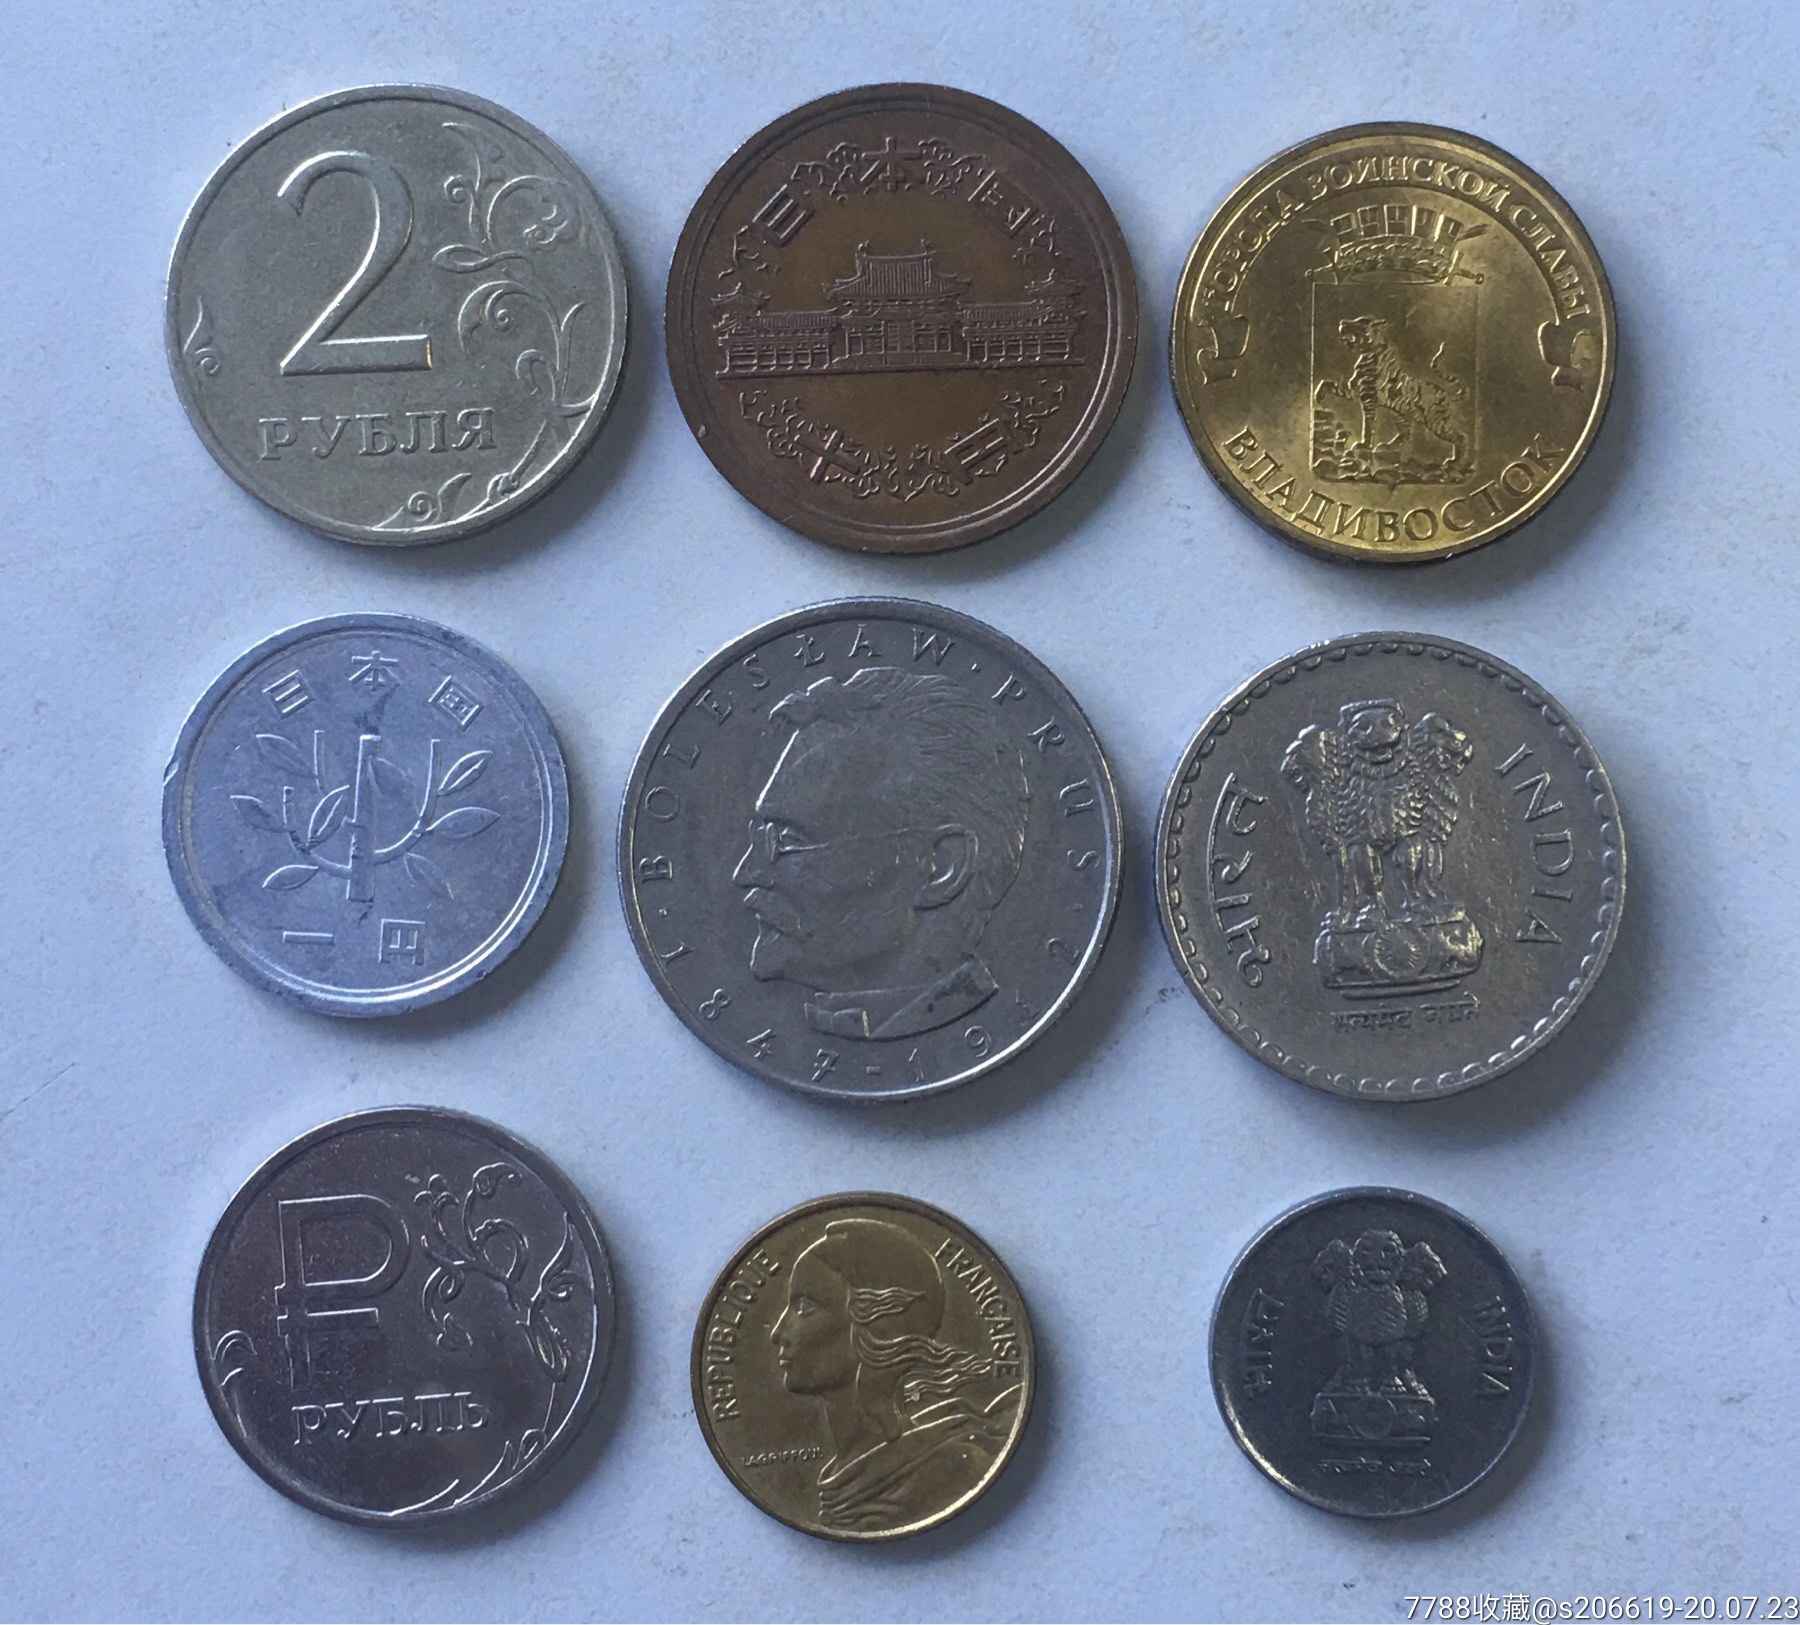 各国硬币多余交流年份不错一起包邮感兴趣的话点"我想要"和我私聊吧